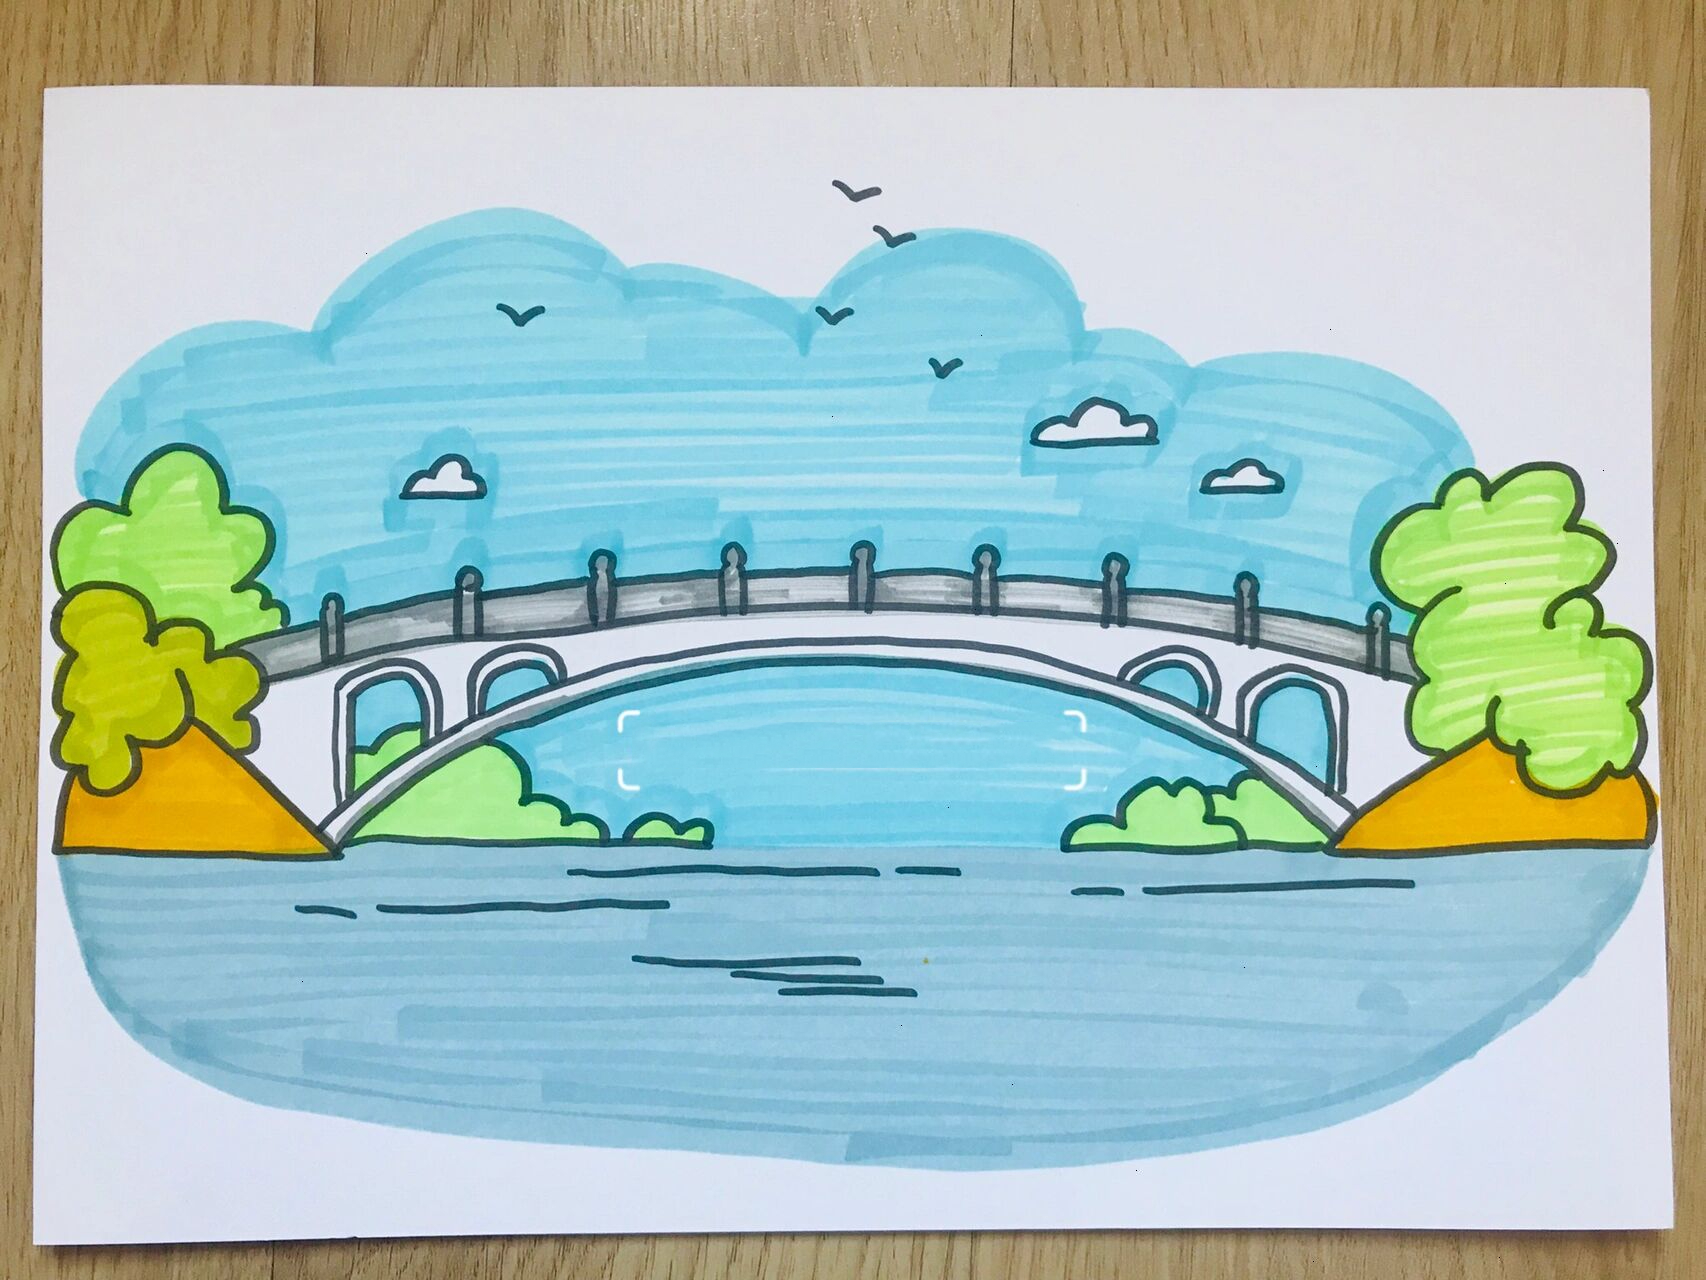 桥梁设计 简笔画图片